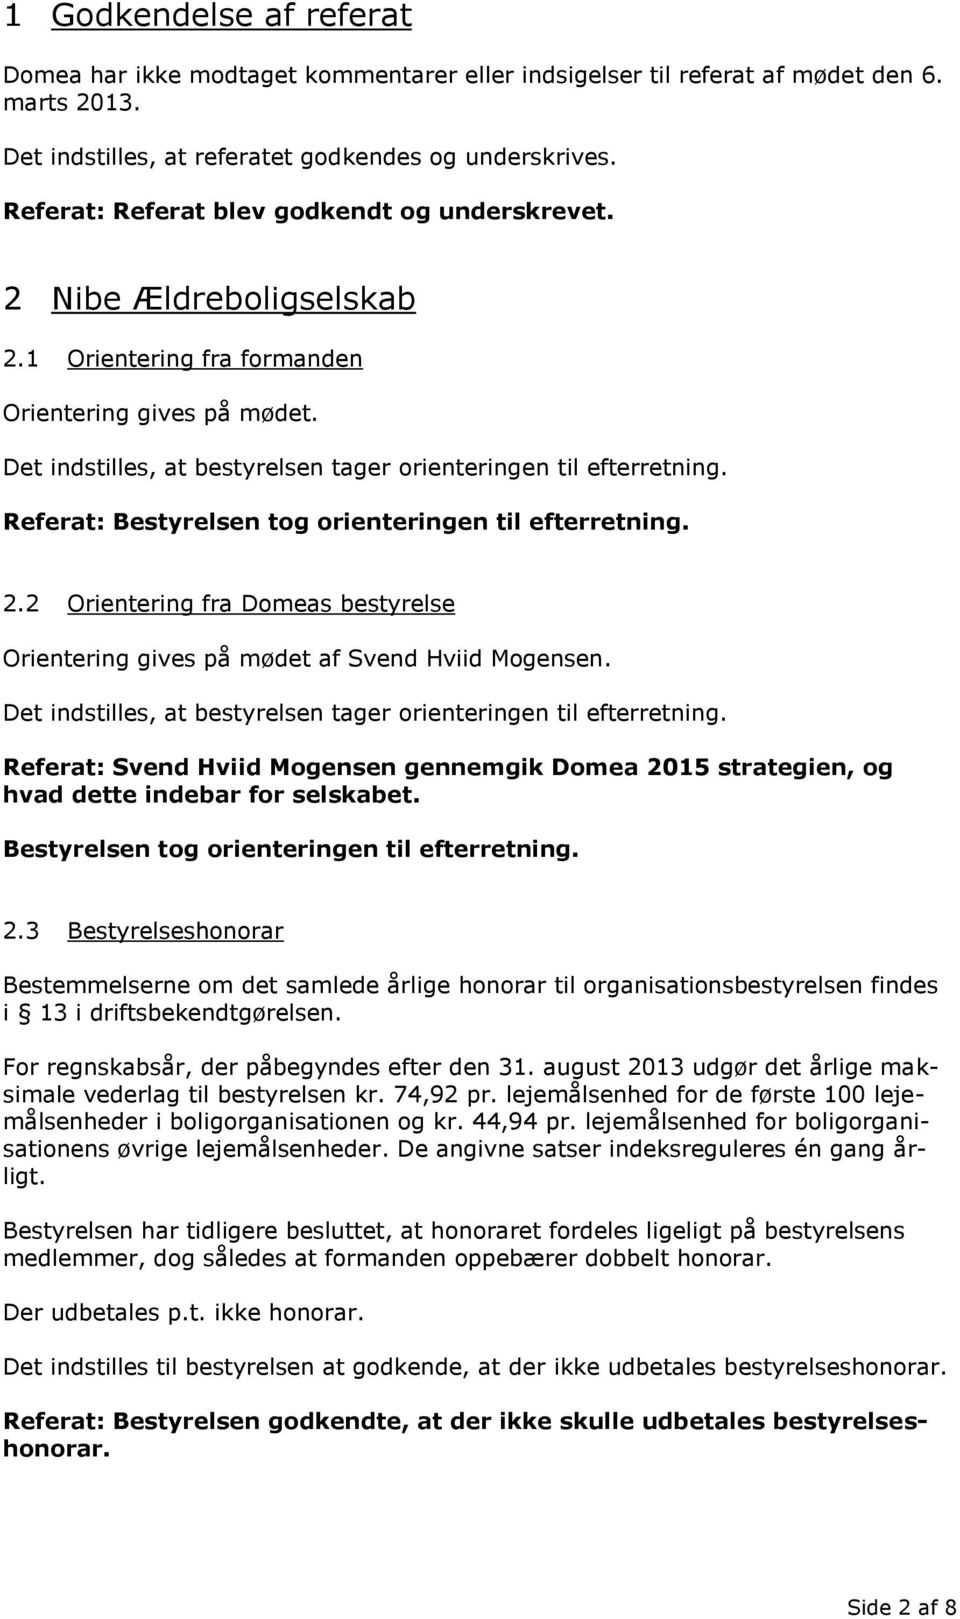 Referat: Svend Hviid Mogensen gennemgik Domea 2015 strategien, og hvad dette indebar for selskabet. Bestyrelsen tog orienteringen til efterretning. 2.3 Bestyrelseshonorar Bestemmelserne om det samlede årlige honorar til organisationsbestyrelsen findes i 13 i driftsbekendtgørelsen.